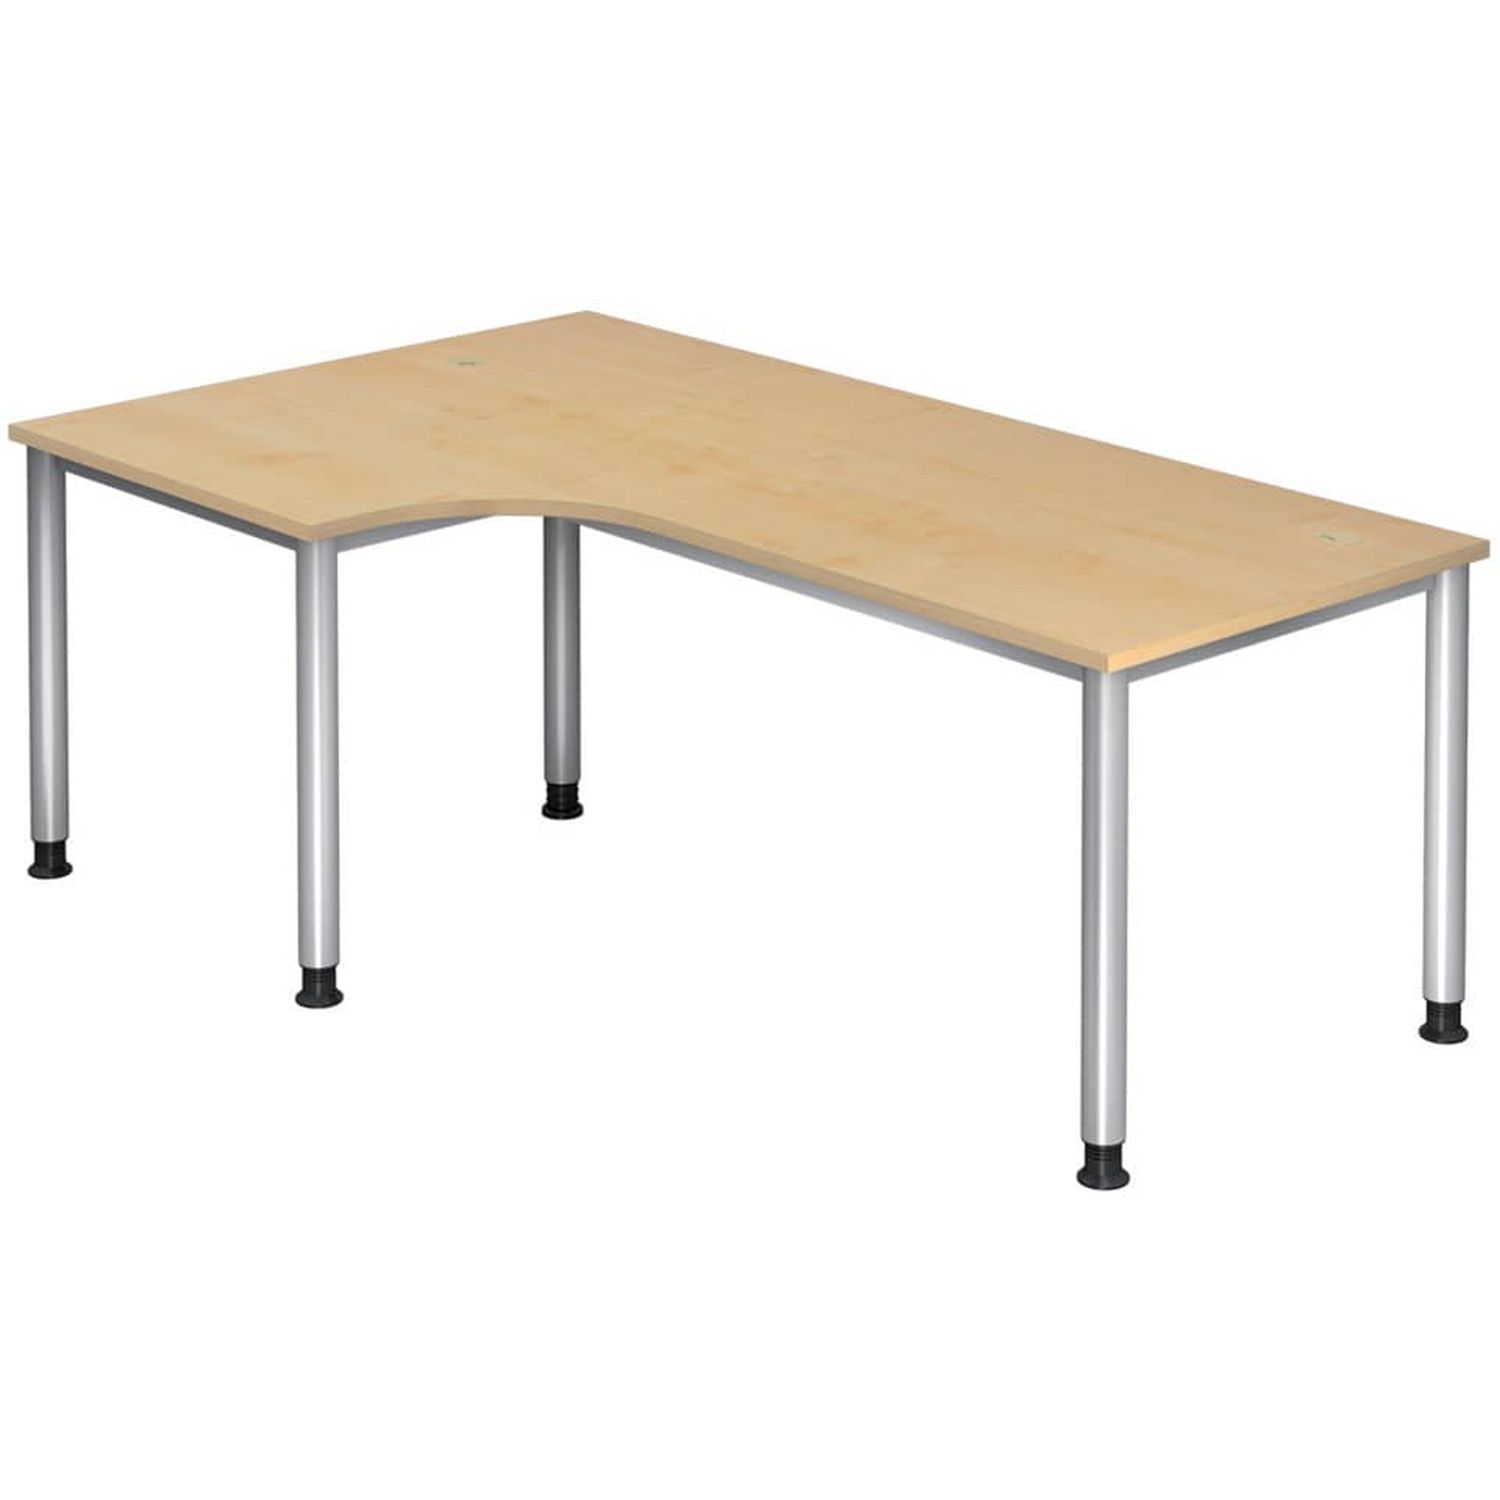 Winkeltisch 4-Fuß-Gestell rund -200 x 68-76 - 120 cm, höhenverstellbar, Winkel 90°, Ahorn/Silber, mit Montageservice